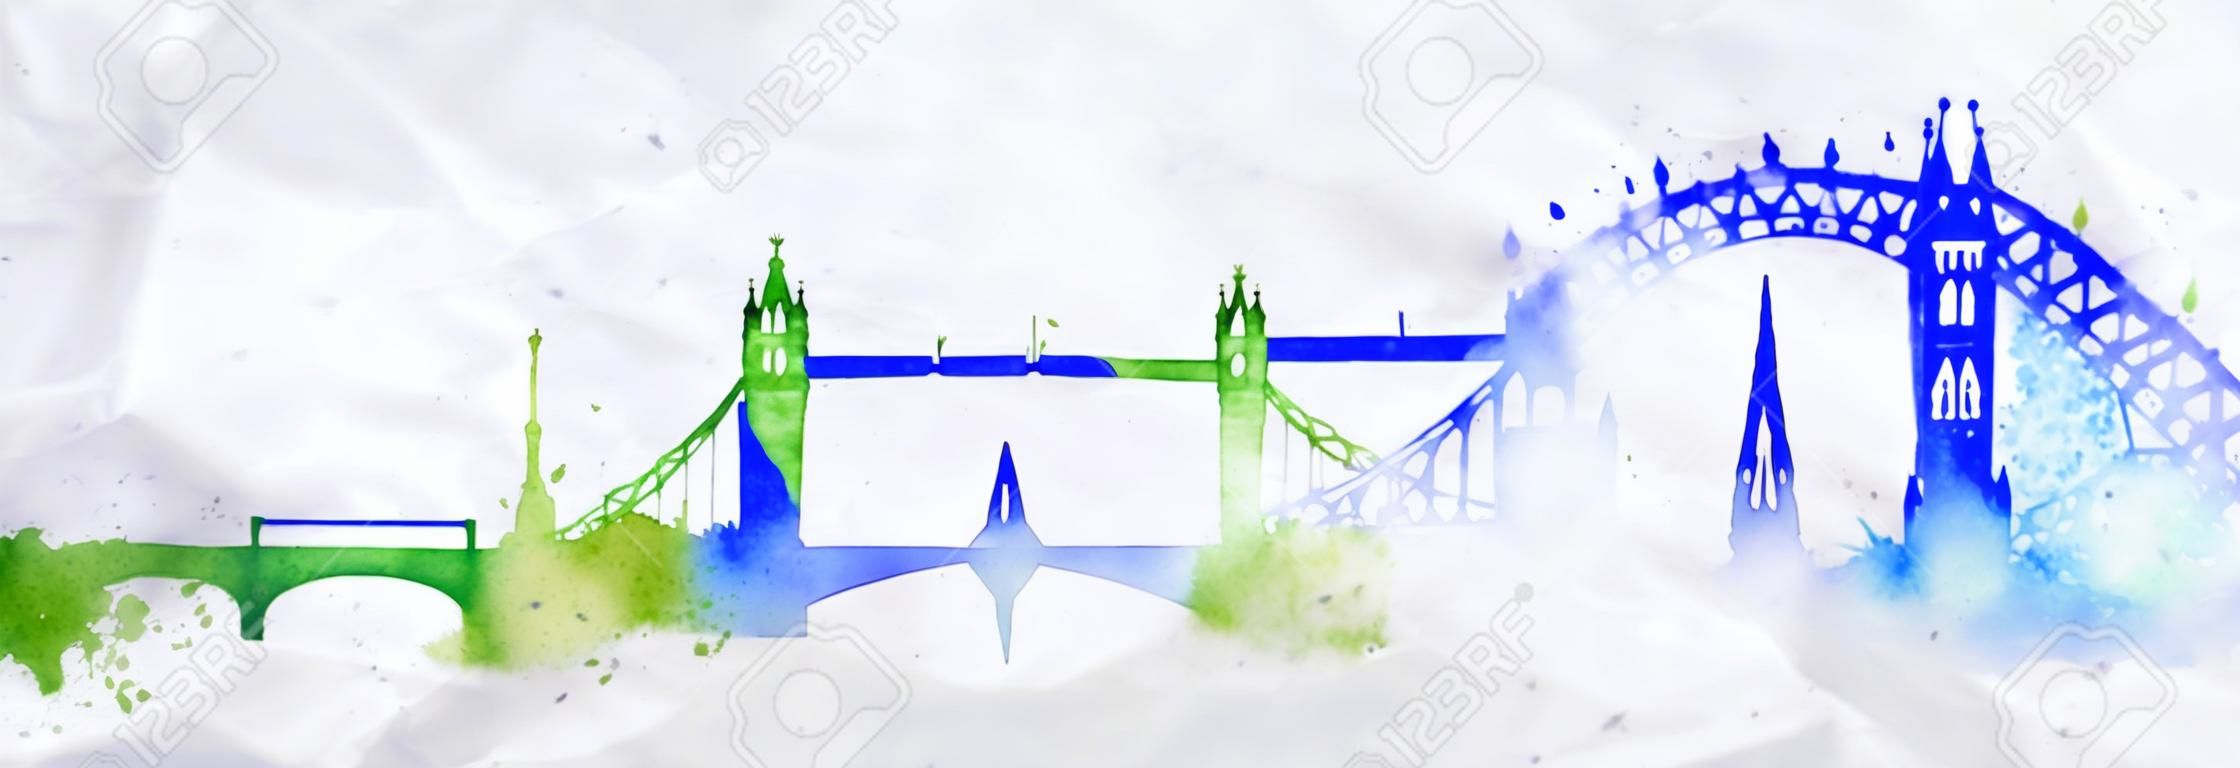 Silhouette ville de Londres peint avec des touches de l'aquarelle gouttes stries sites avec des couleurs bleu-vert